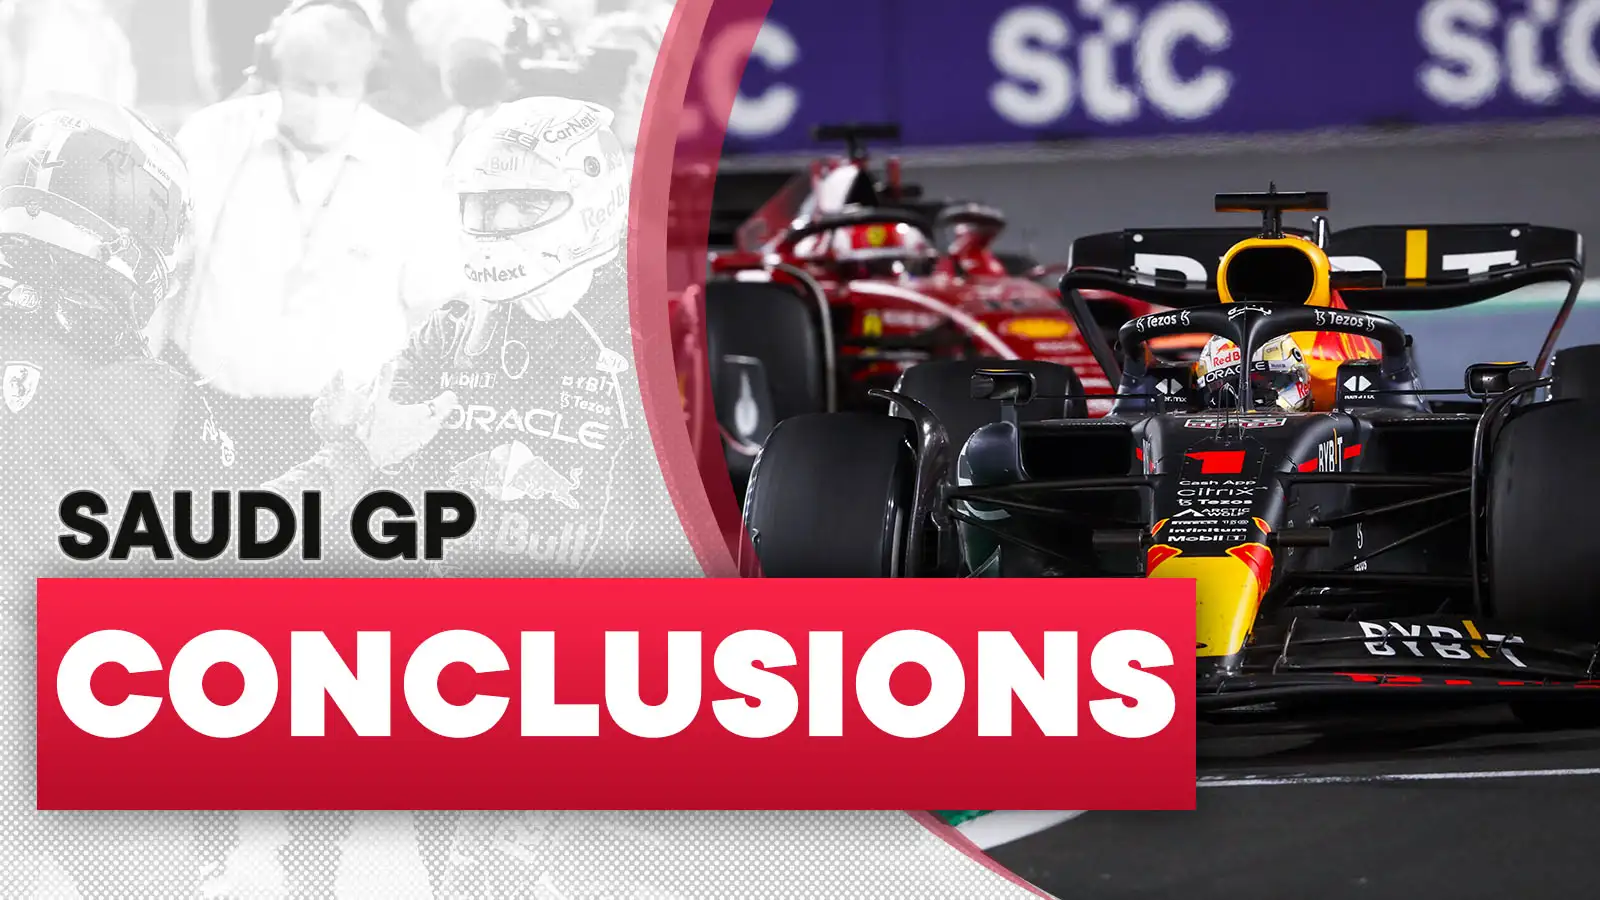 Saudi Arabia Grand Prix conclusions